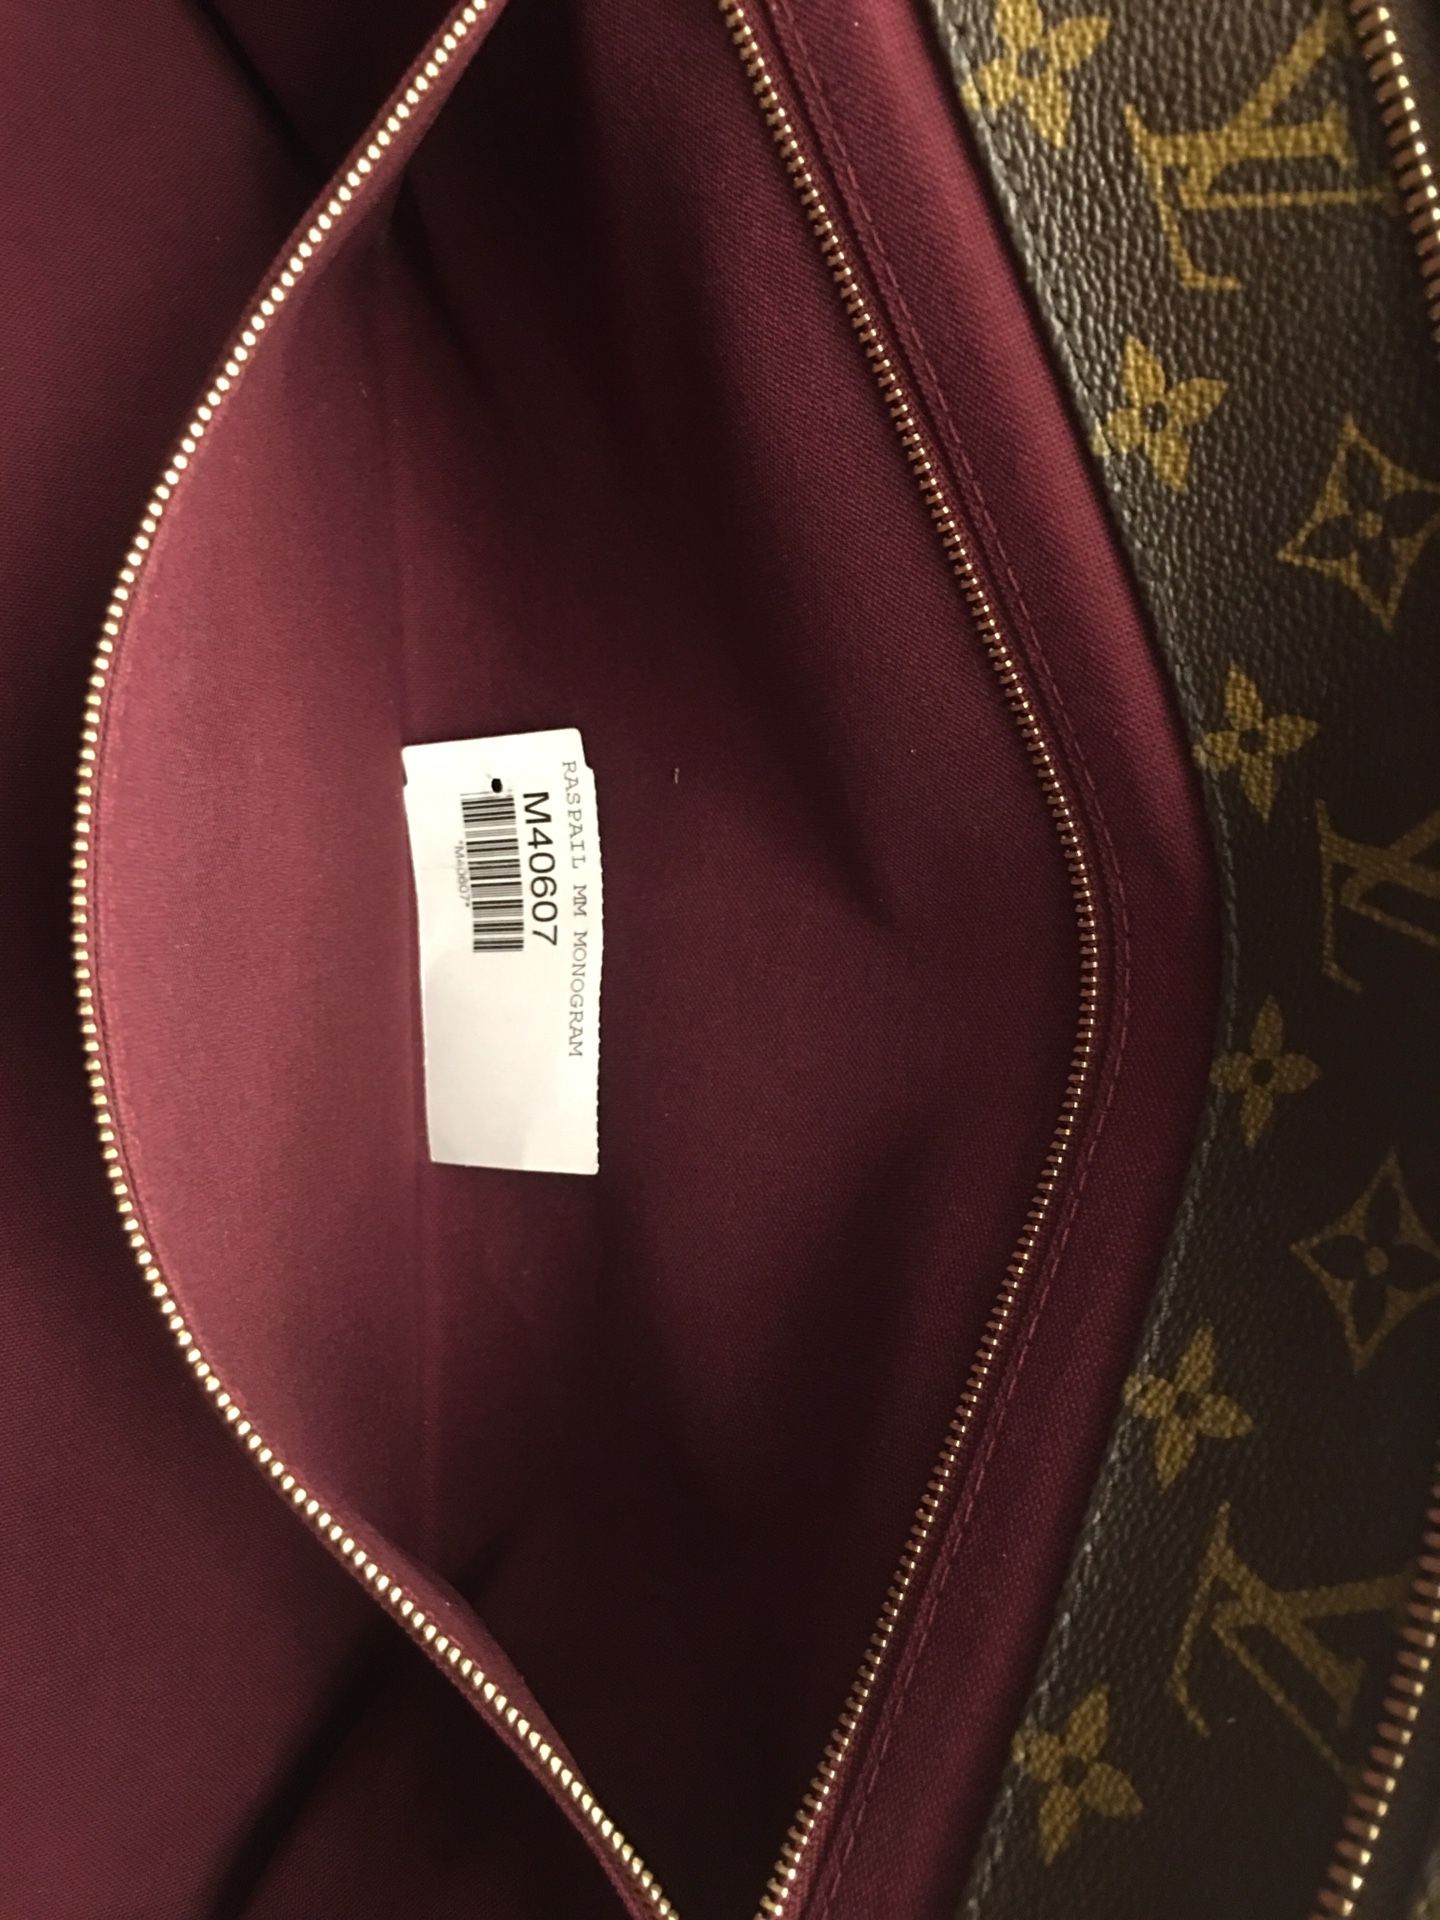 Louis Vuitton Vintage Raspail Shoulder bag 🎉 SALE!! Limited time